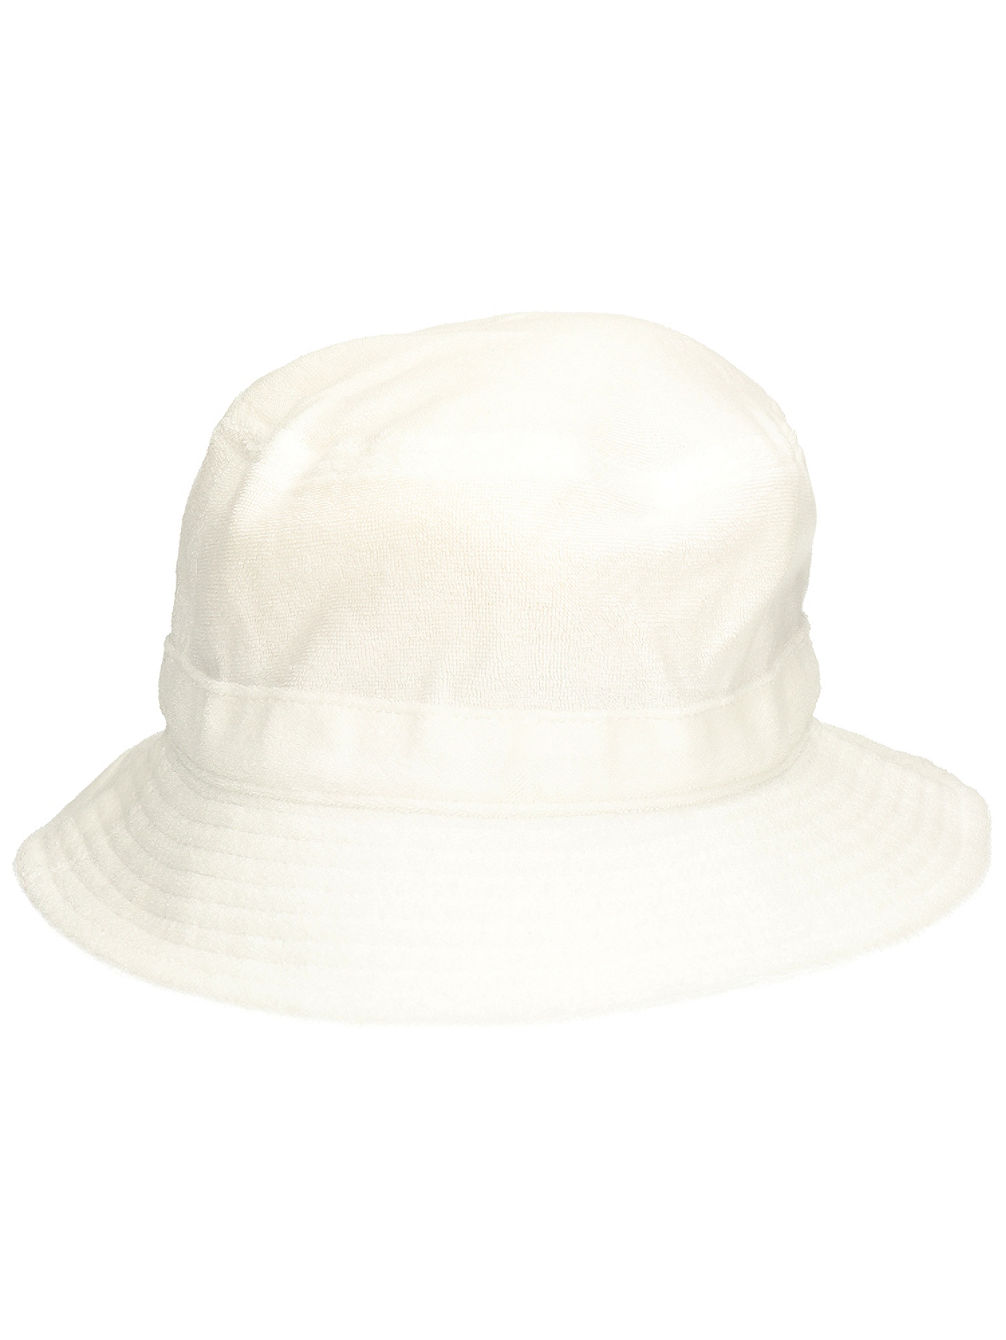 Nora Bucket Hat